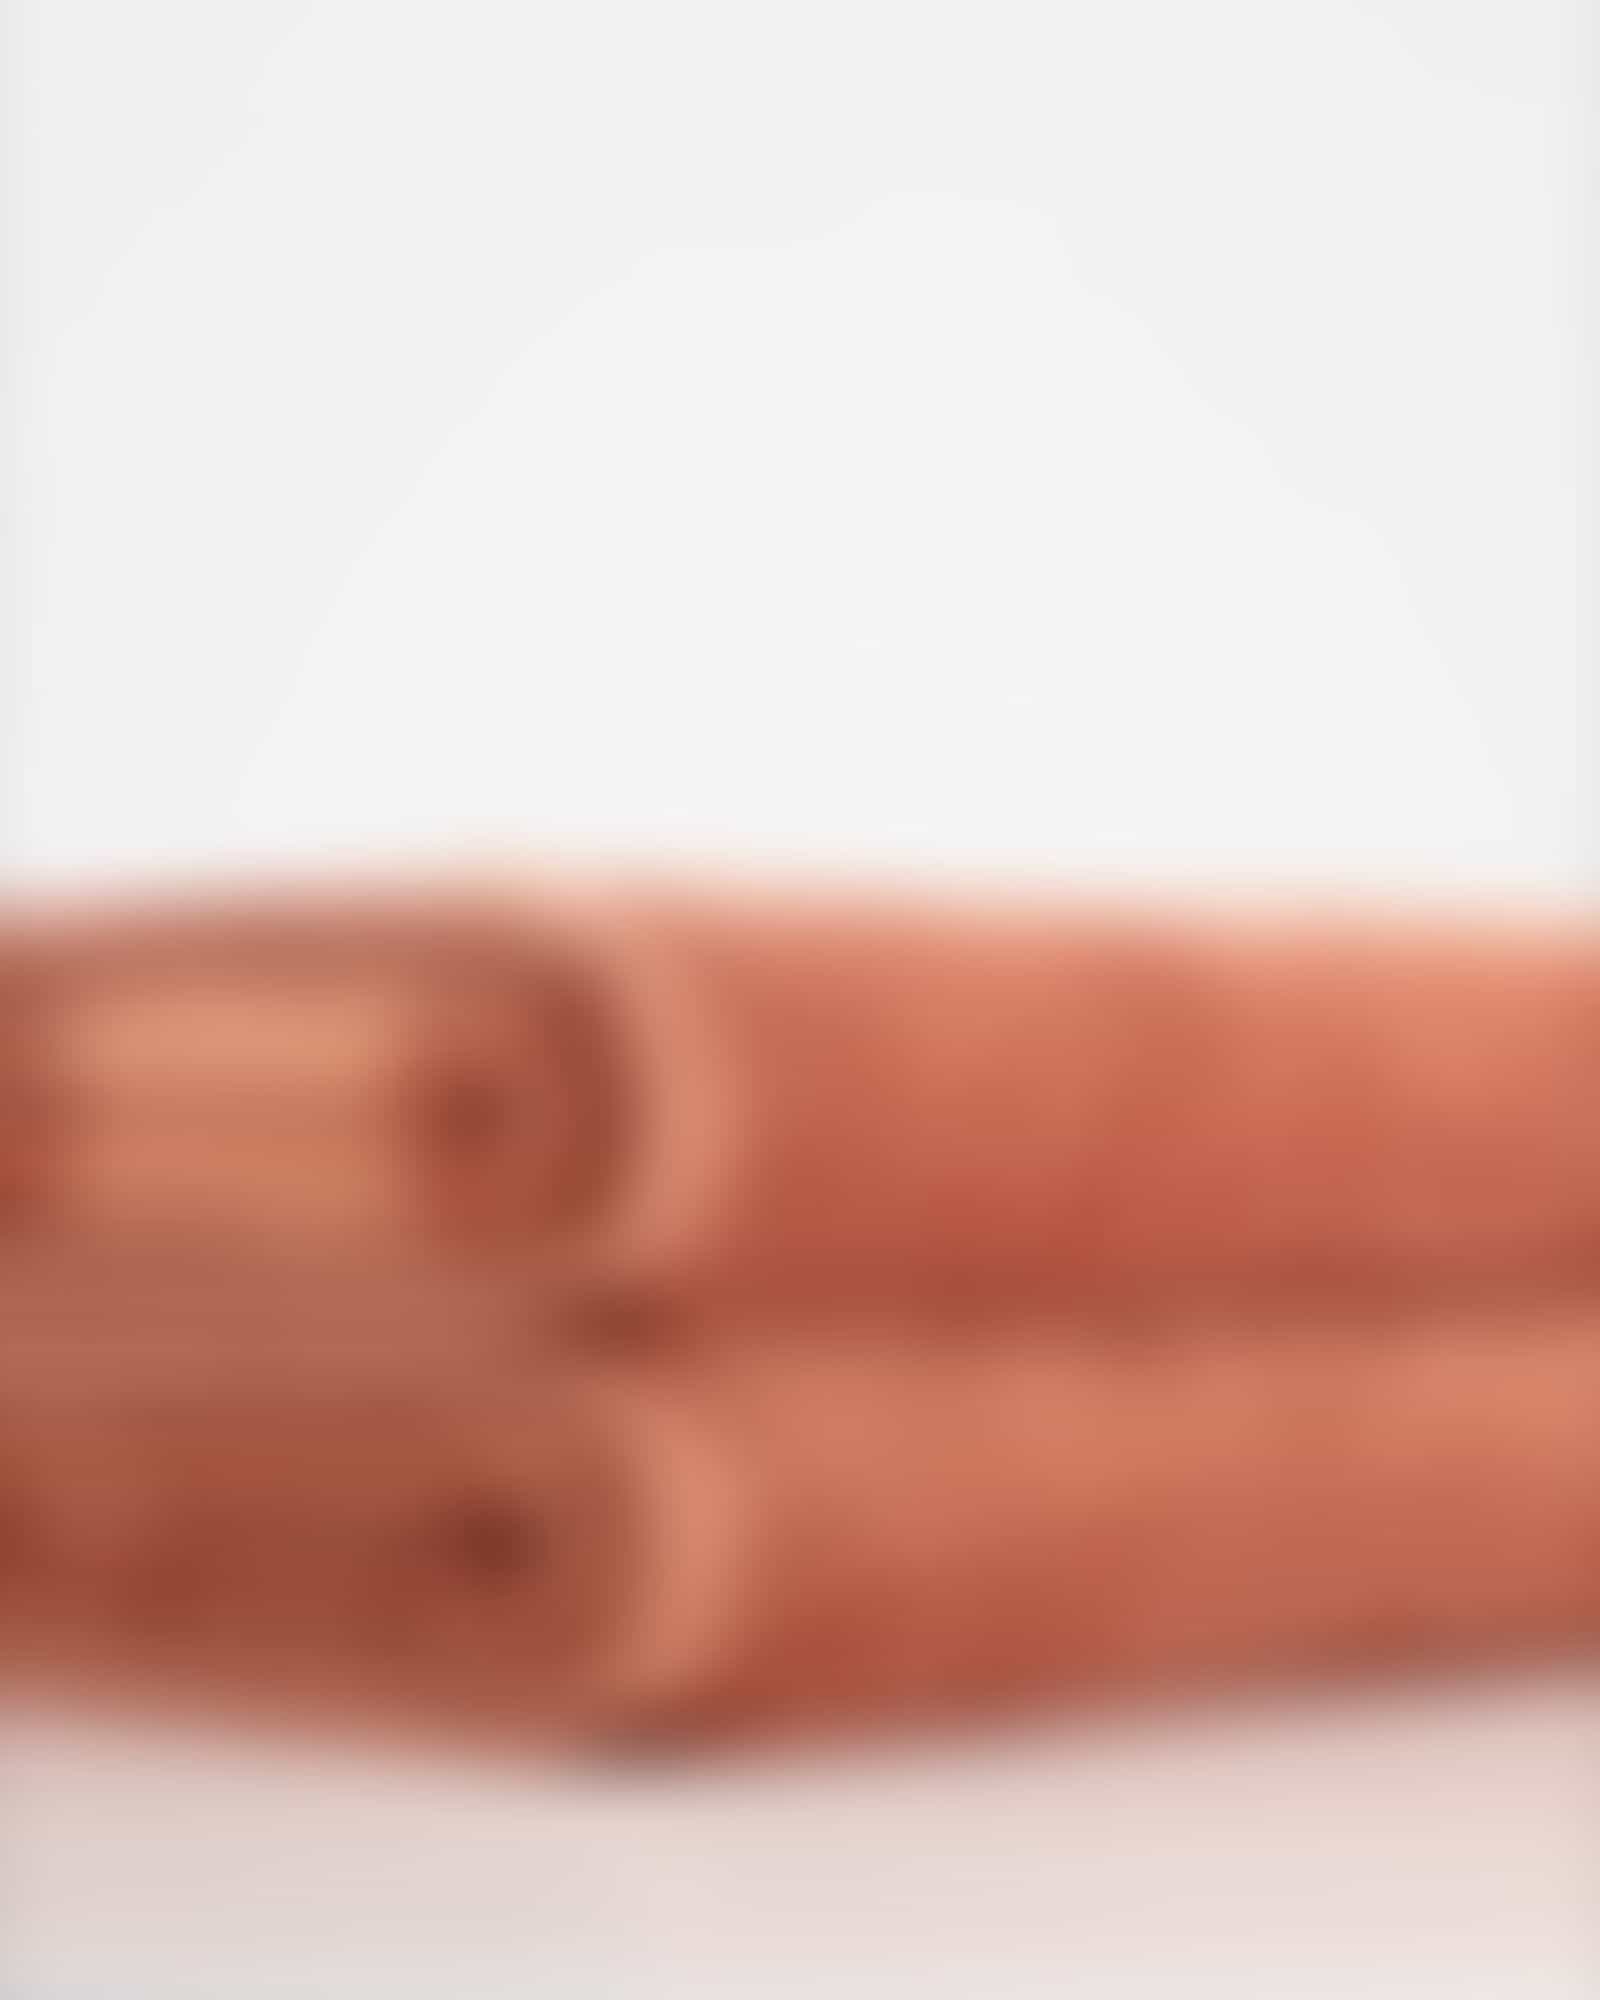 Cawö Handtücher Grade Streifen 4012 - Farbe: kupfer - 33 - Duschtuch 80x150 cm